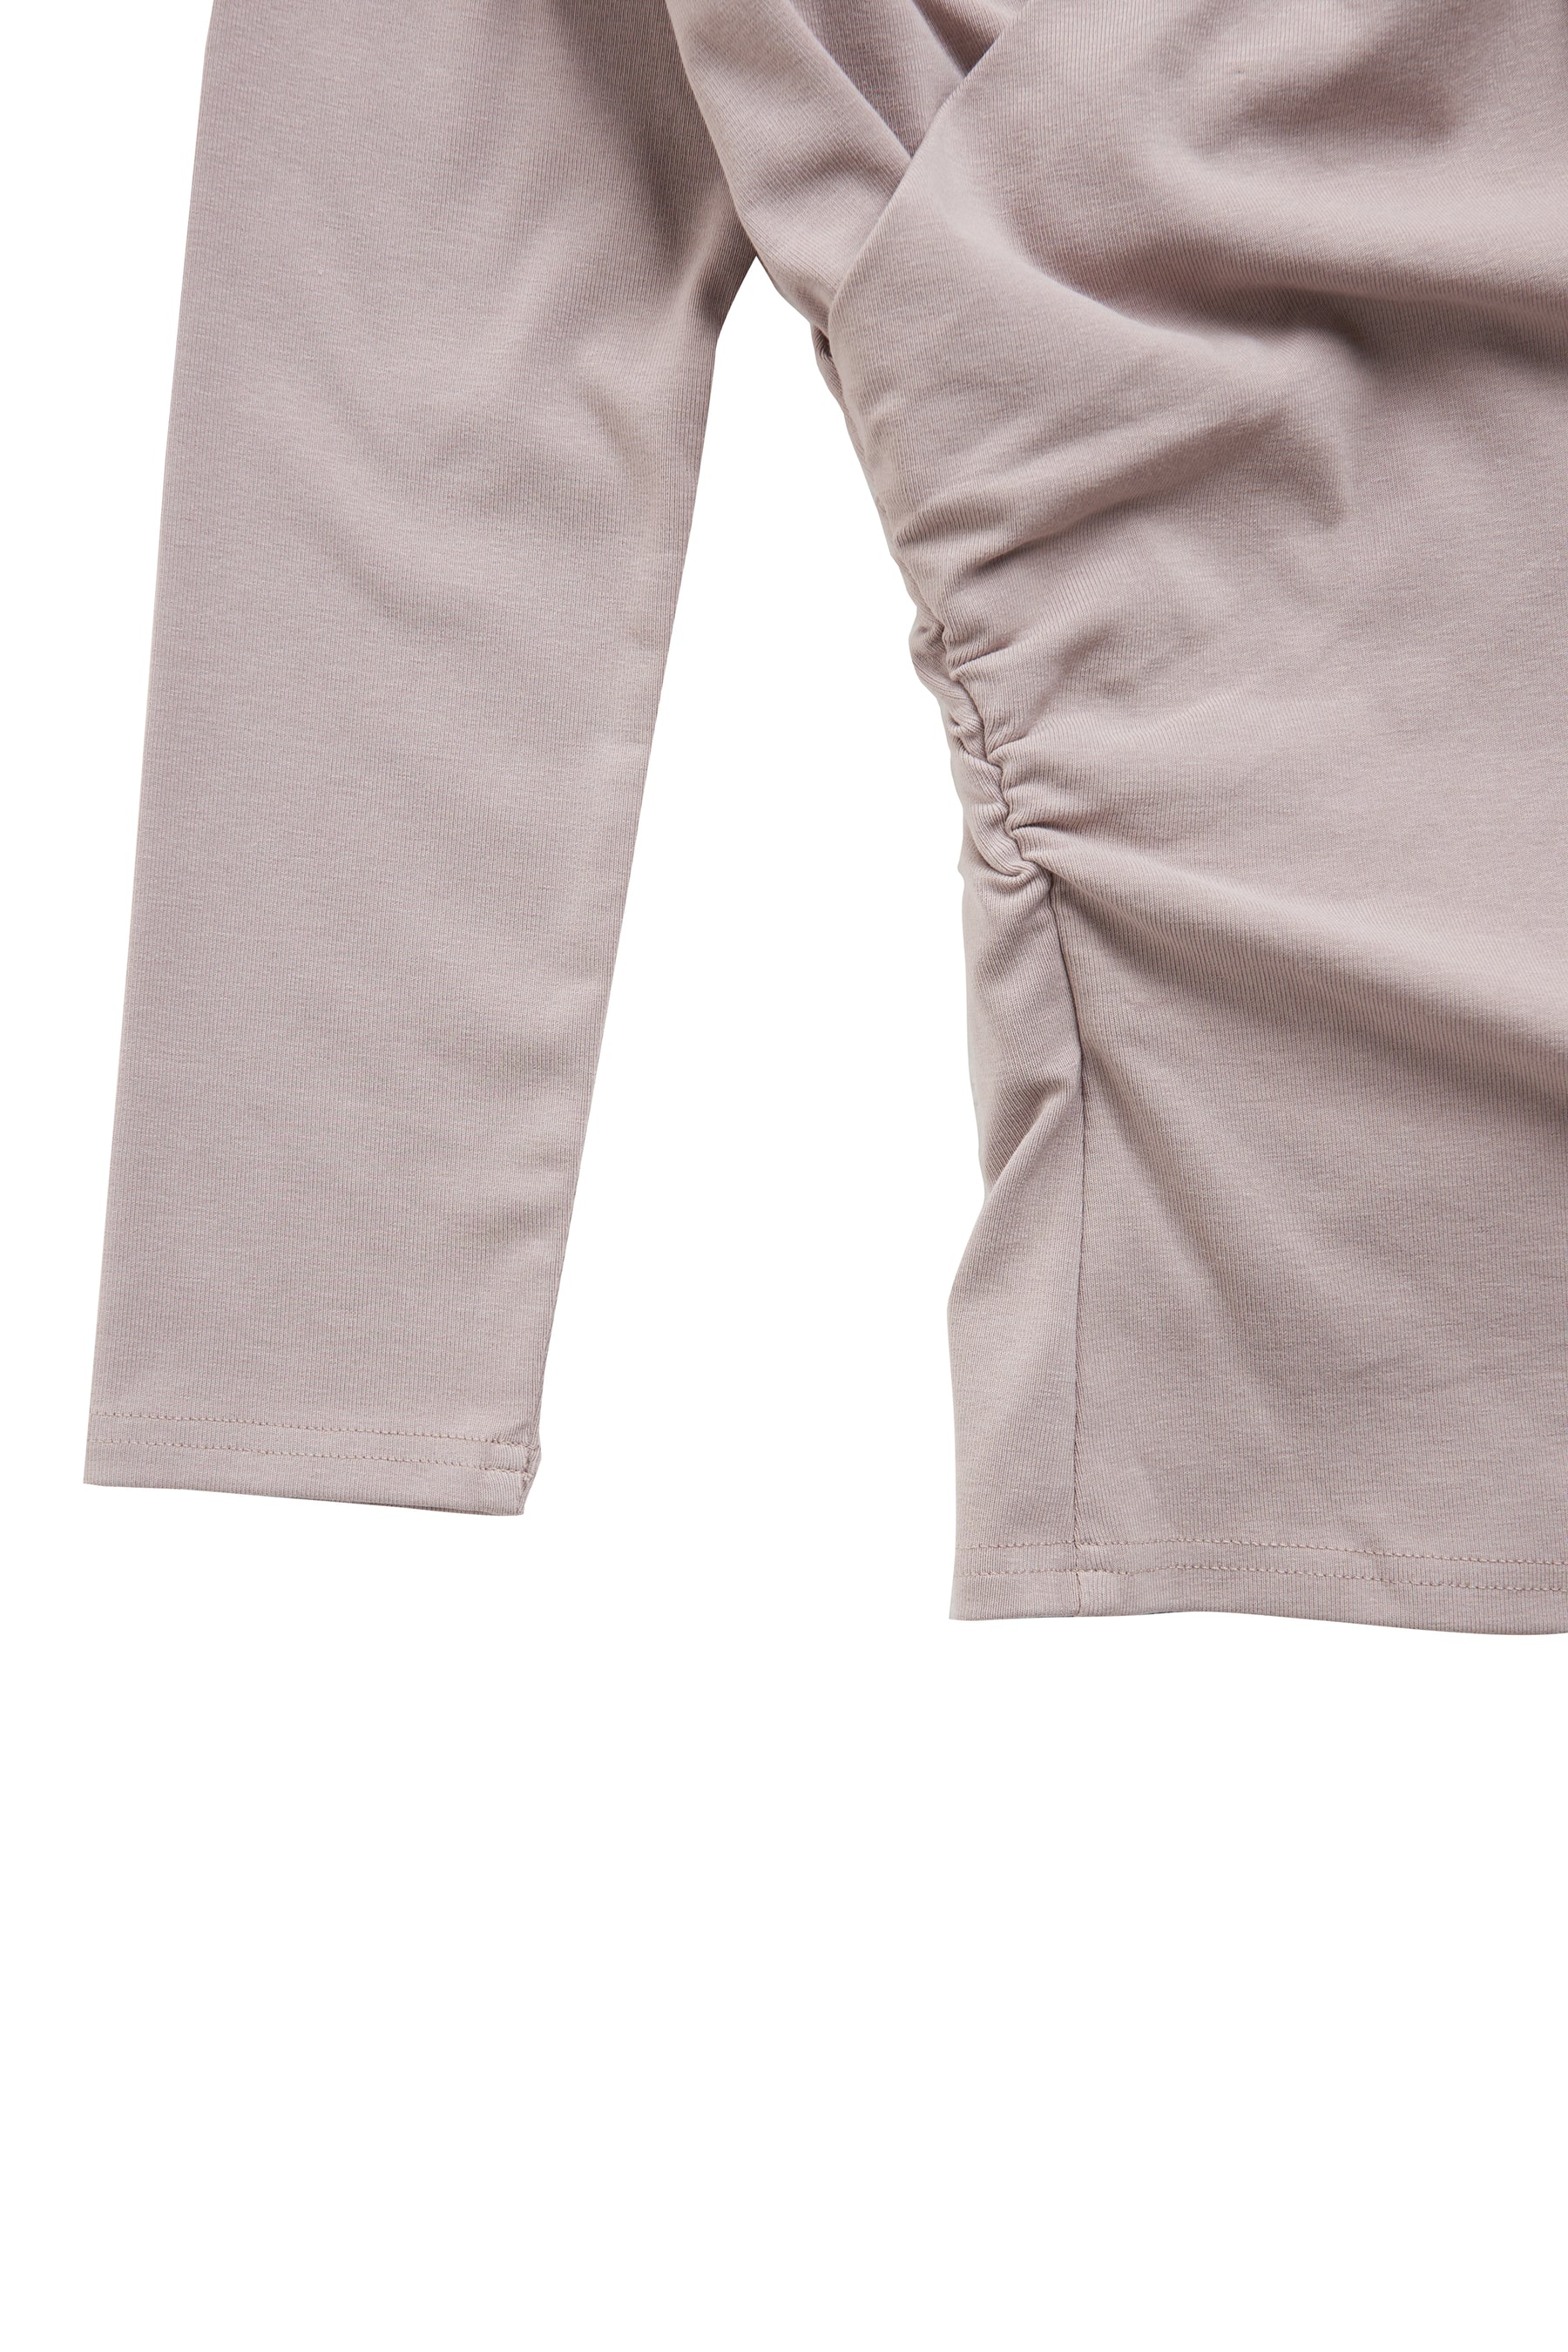 [New color] Asymmetric Cotton-blend Jersey Top